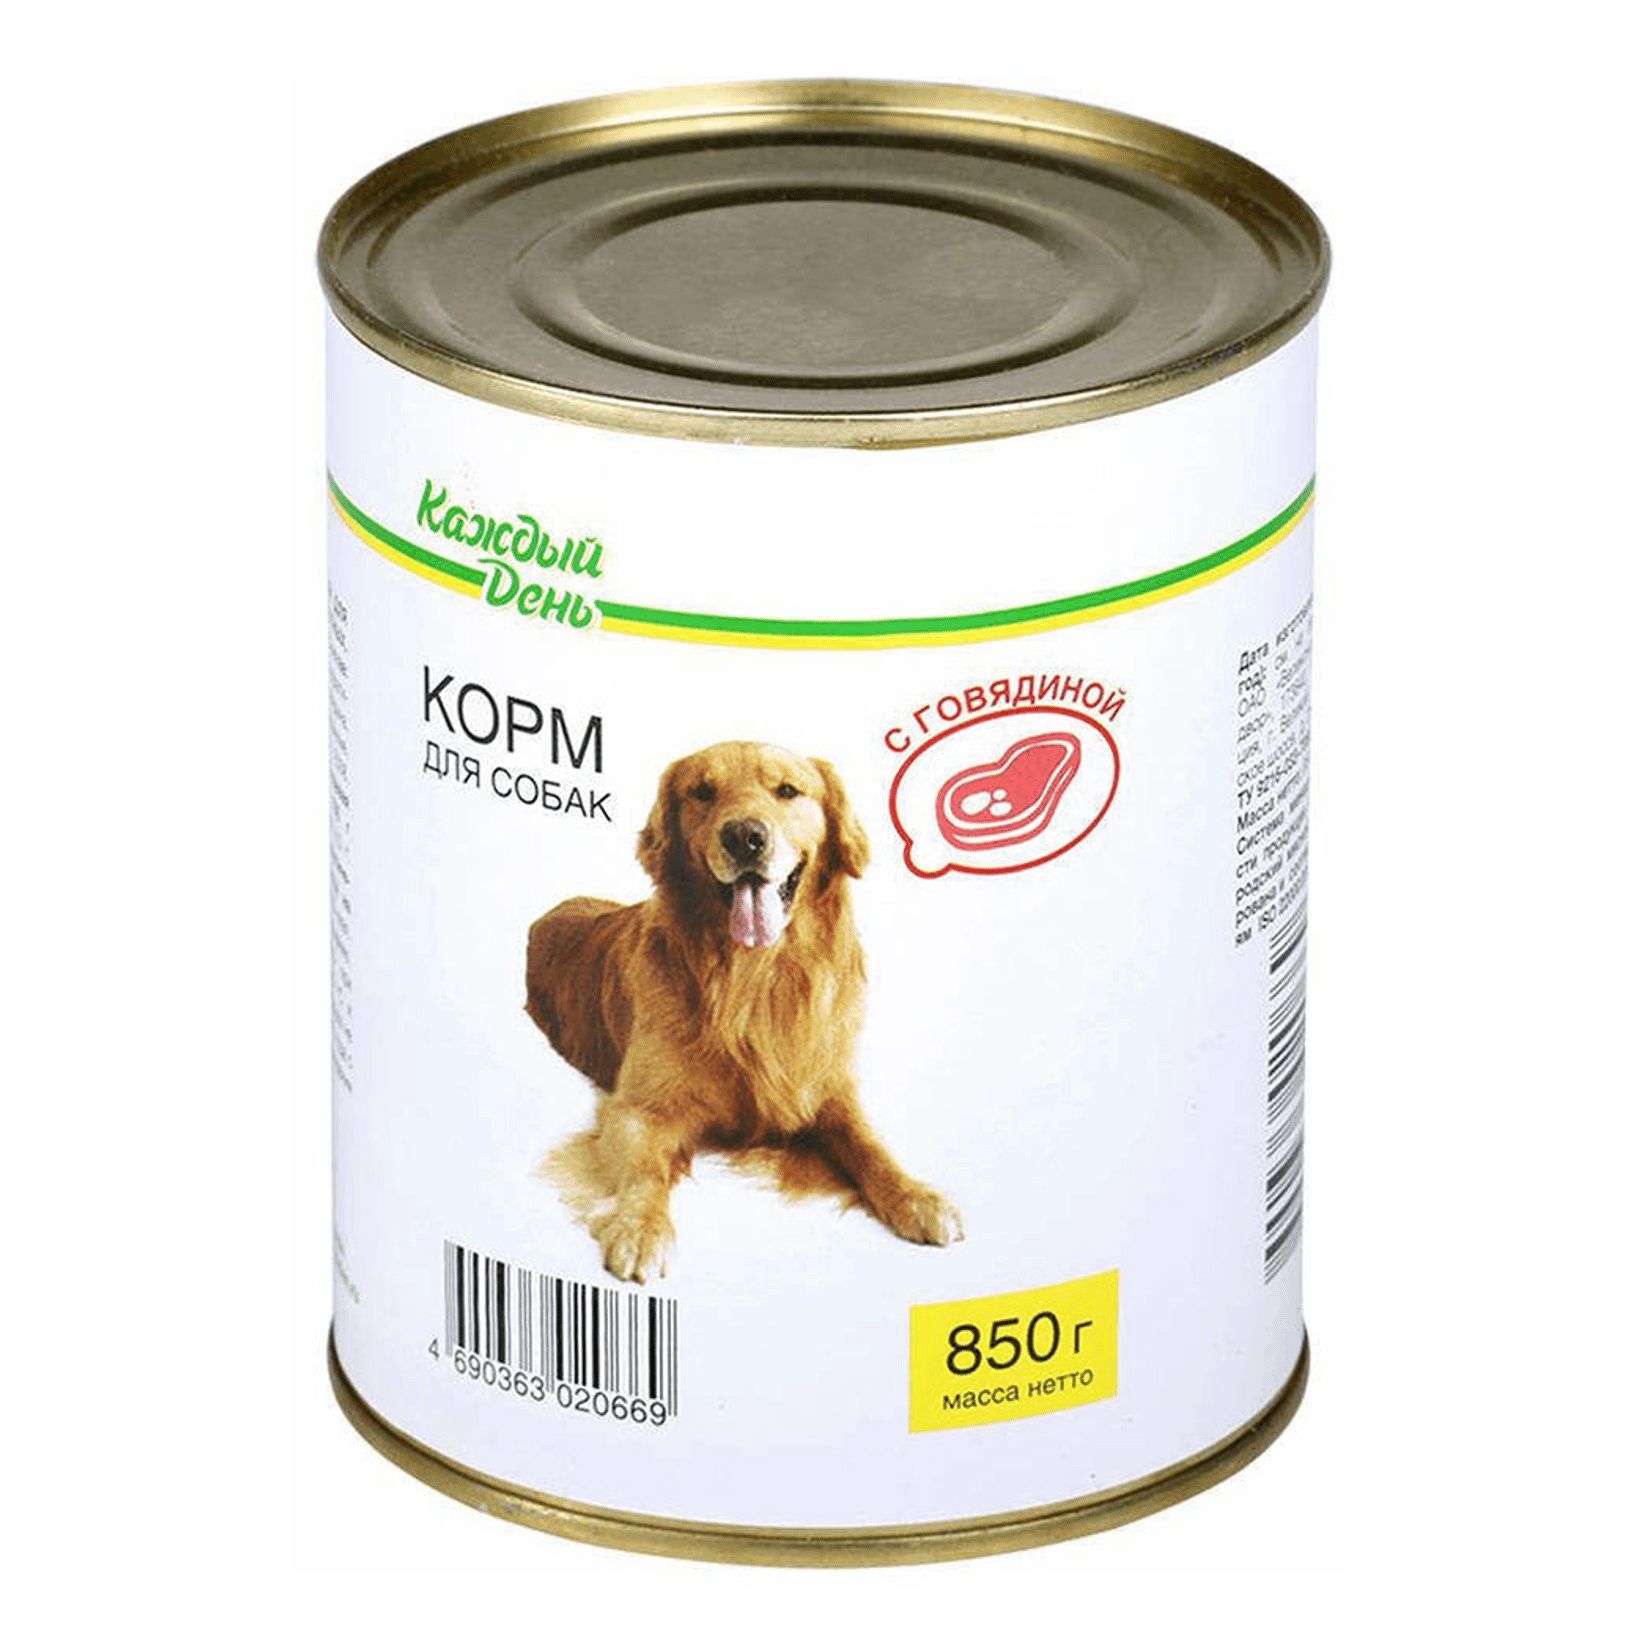 Корм для собаки тула. Корм для собак каждый день консервы для собак с говядиной (0.85 кг) 1 шт.. Корм для собак darsi (0.85 кг) 1 шт. Консервы для собак: говядина и рис. Корм для собак Rocky (0.25 кг) 1 шт. Паштет с говядиной для собак. Корм для собак Aras (0.82 кг) 1 шт. Premium select для собак - говядина с овощами и рисом.